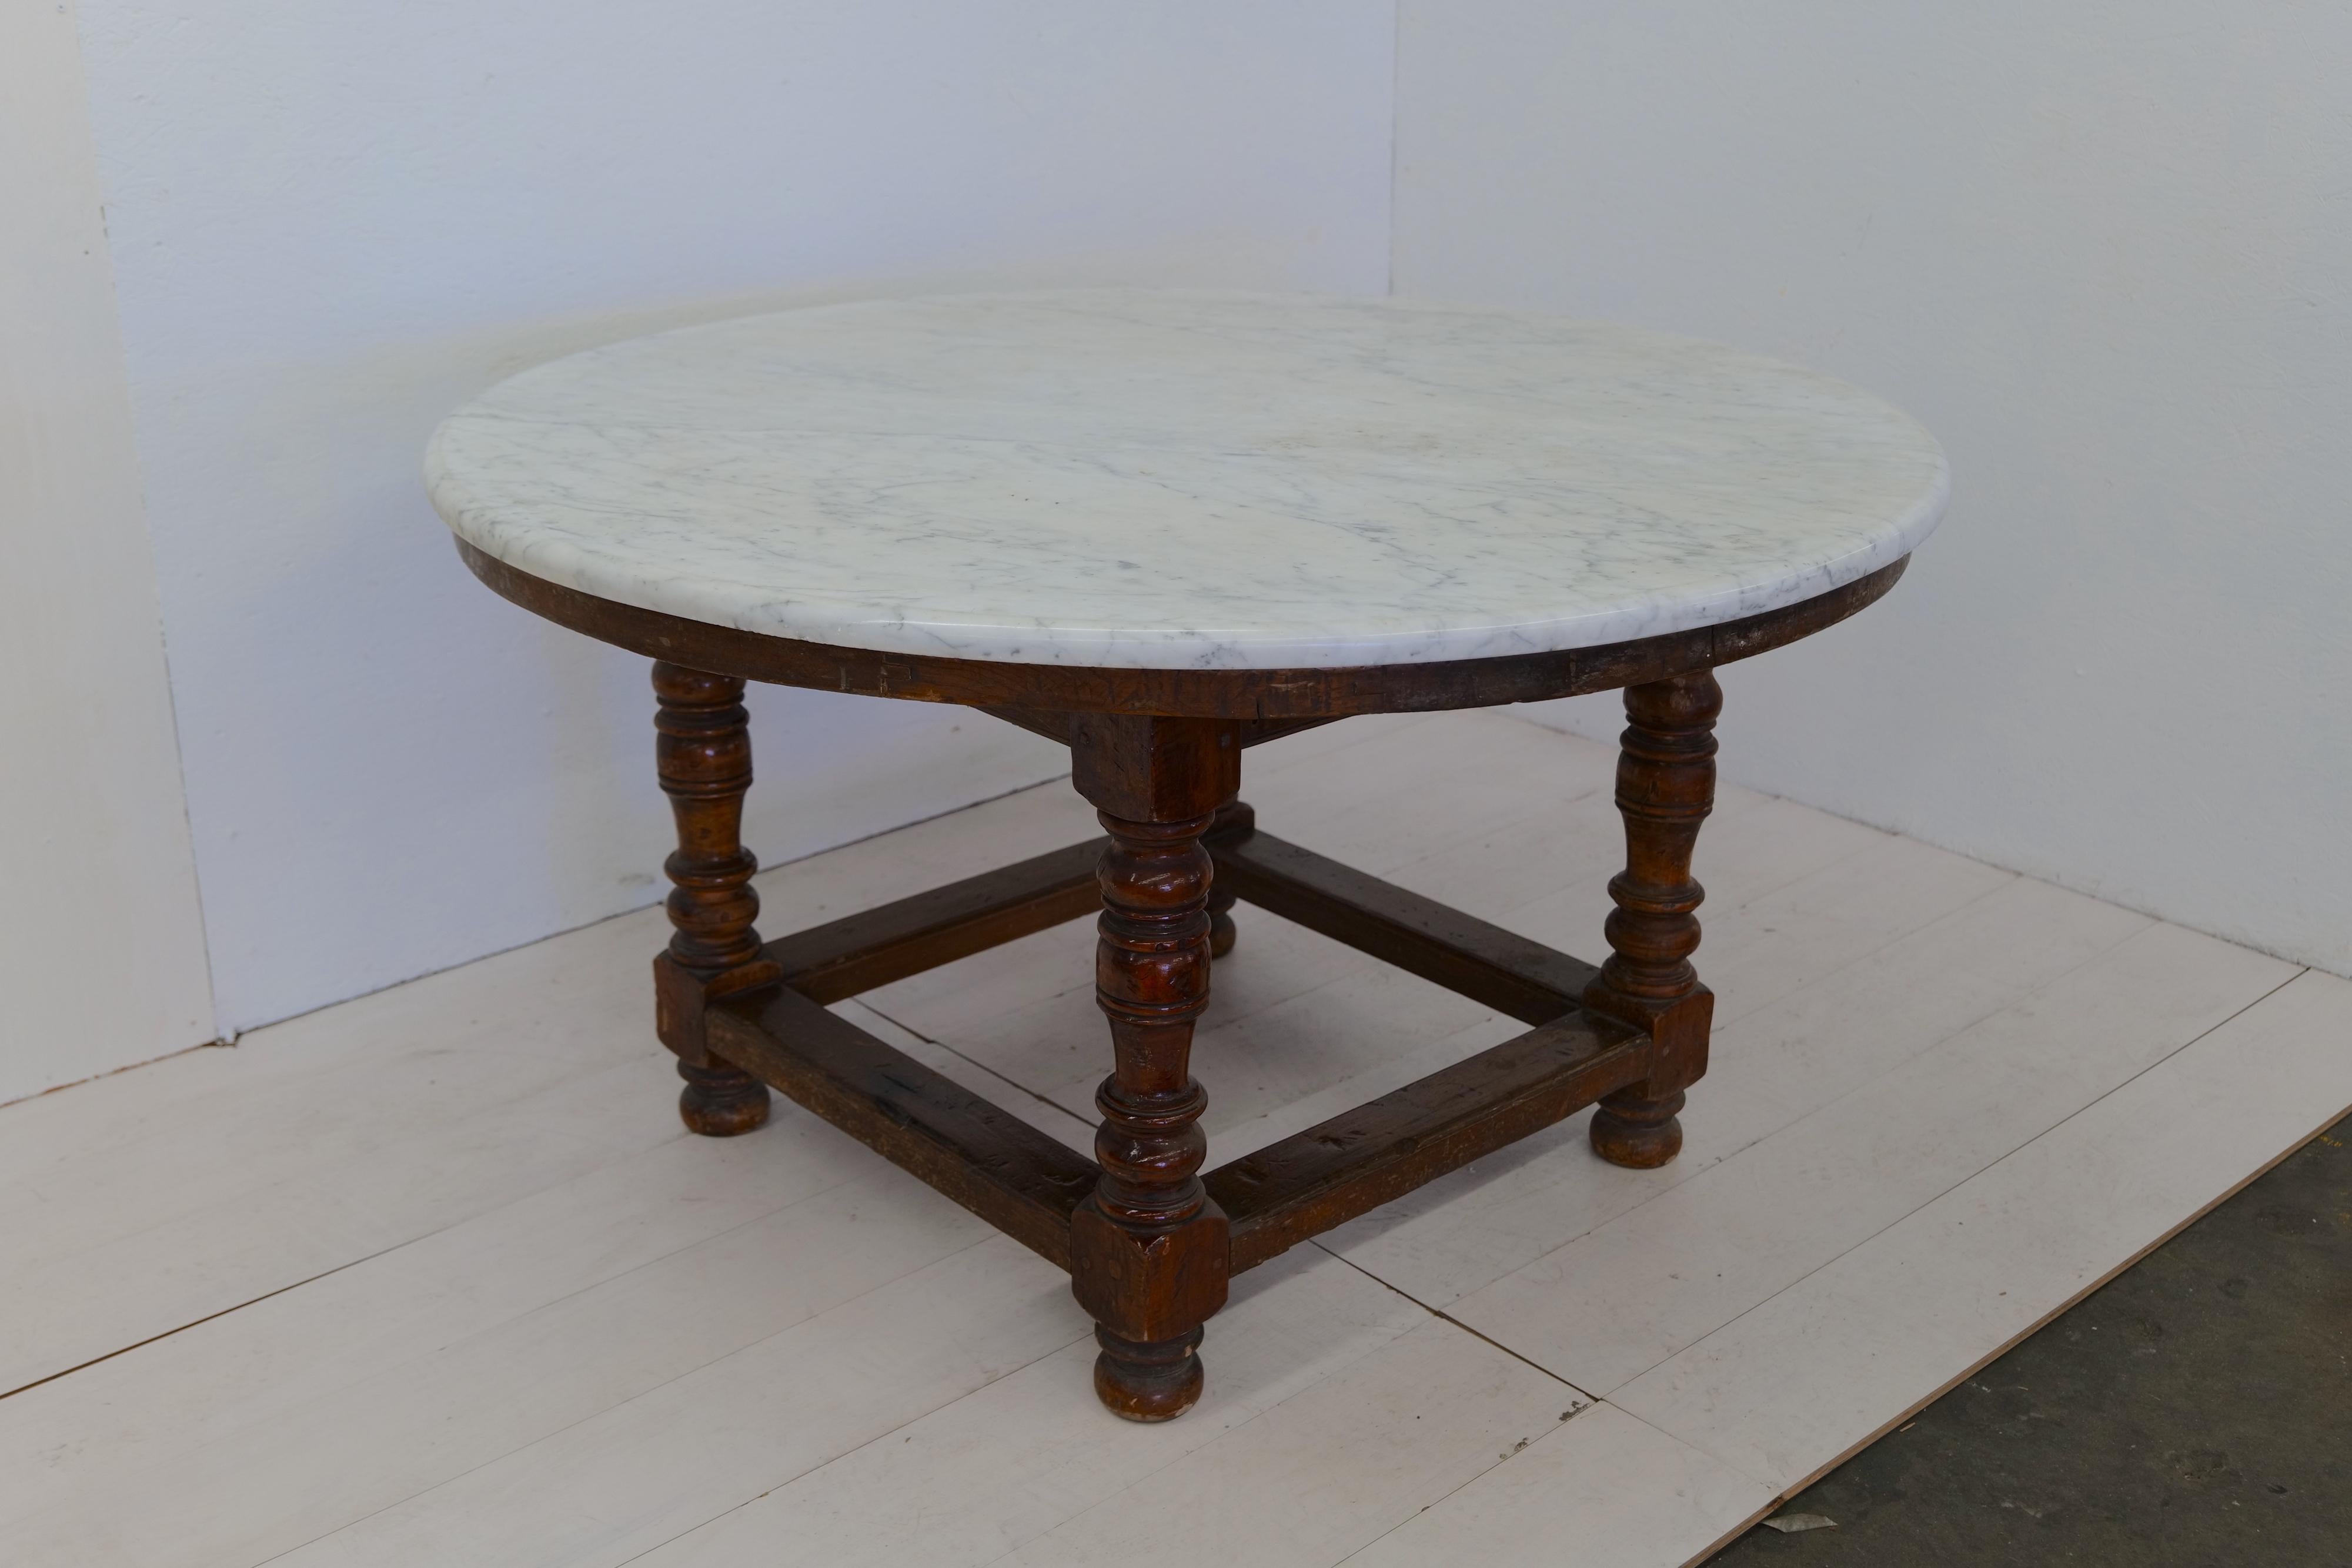 La table à manger surdimensionnée en bois et marbre du XVIIIe siècle est un meuble grandiose et luxueux. La table est dotée d'une base en bois robuste qui lui confère stabilité et soutien. Le point fort de cette table de salle à manger est son